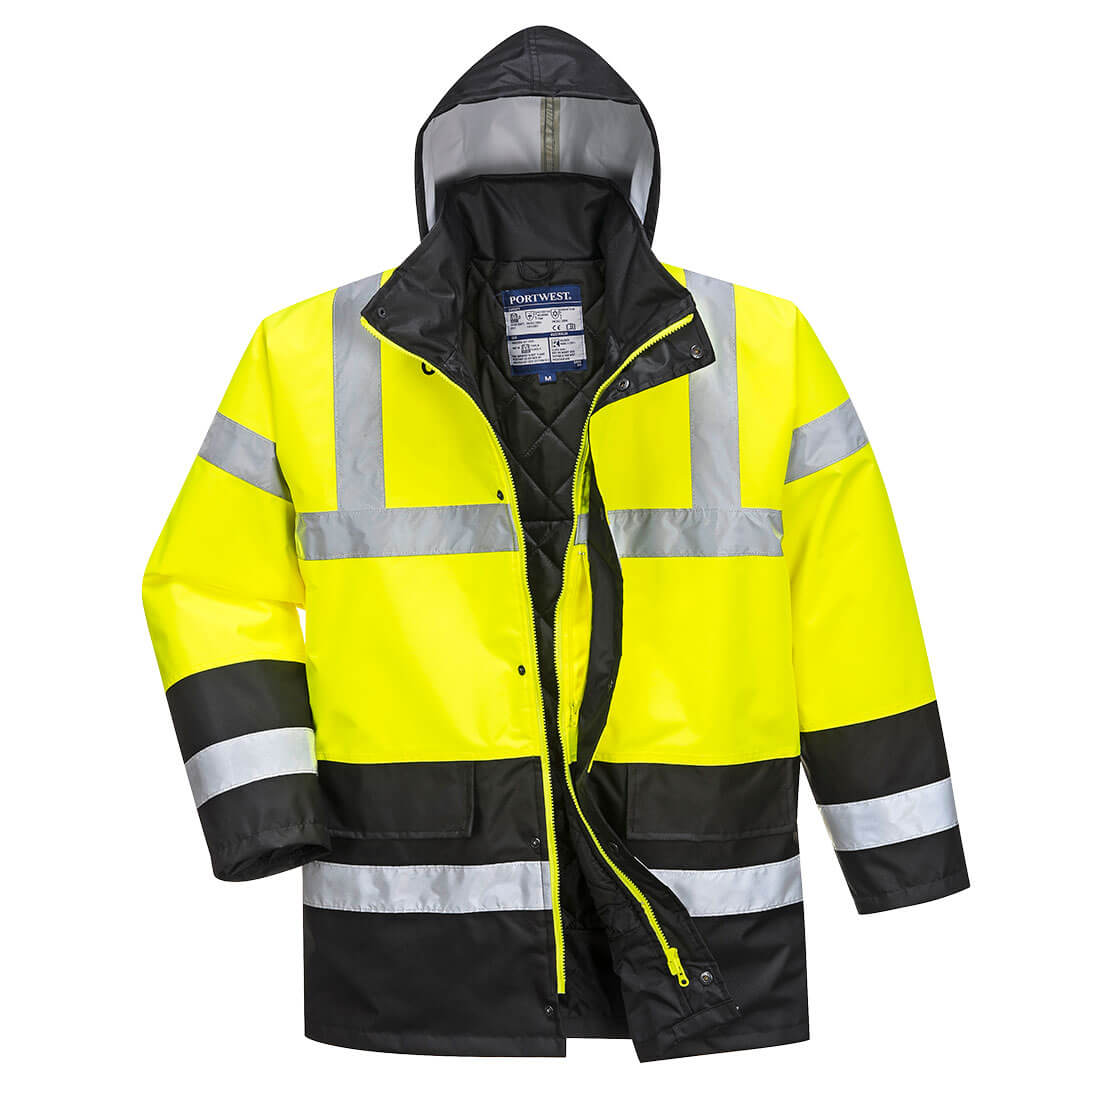 Portwest S466 Hi Vis Contrast Traffic Jacket 1#colour_yellow-black